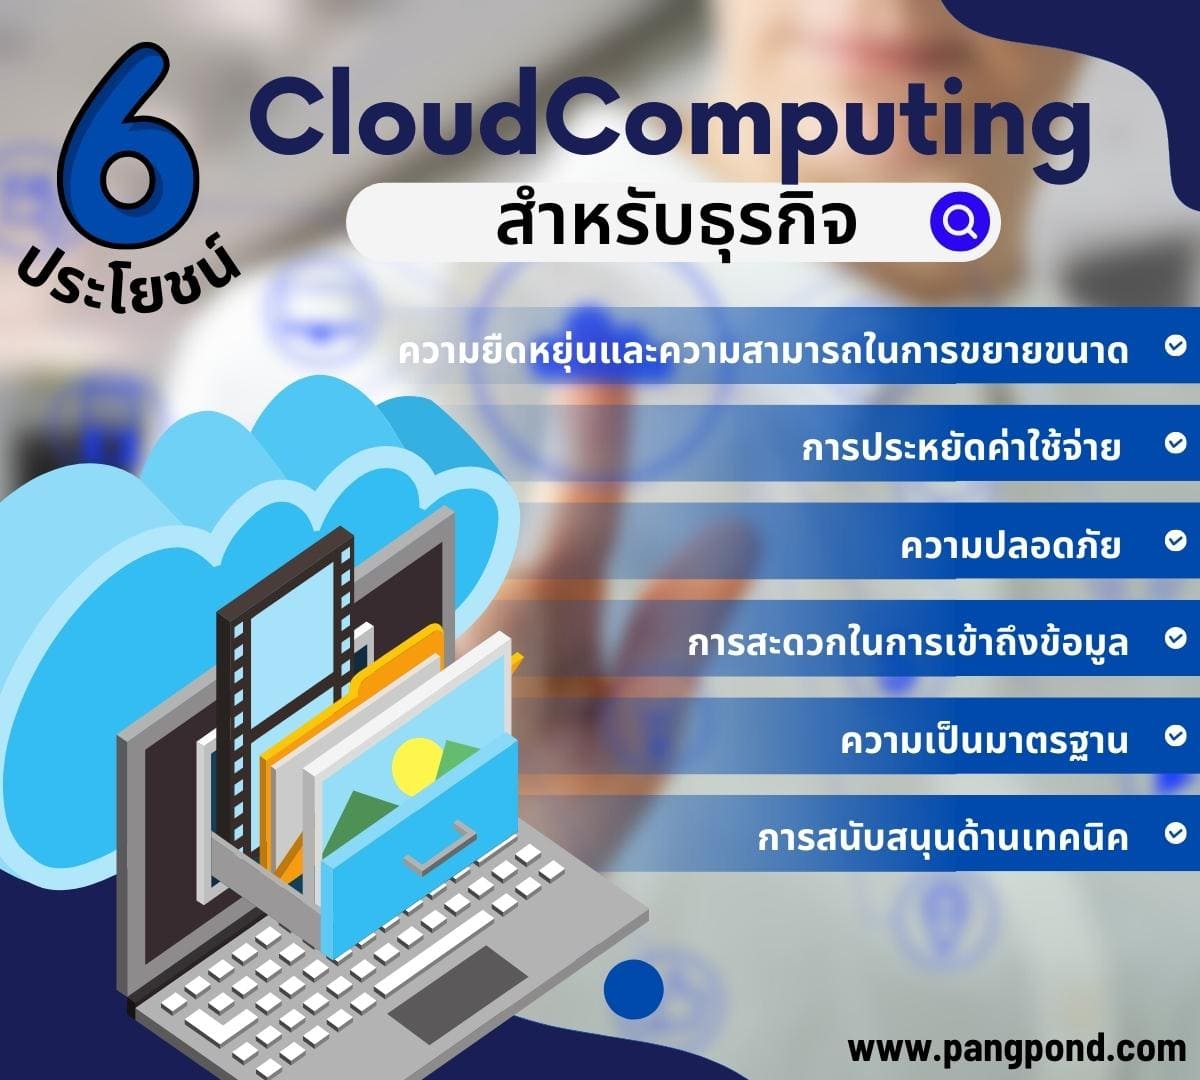 6 ประโยชน์ CloudComputing